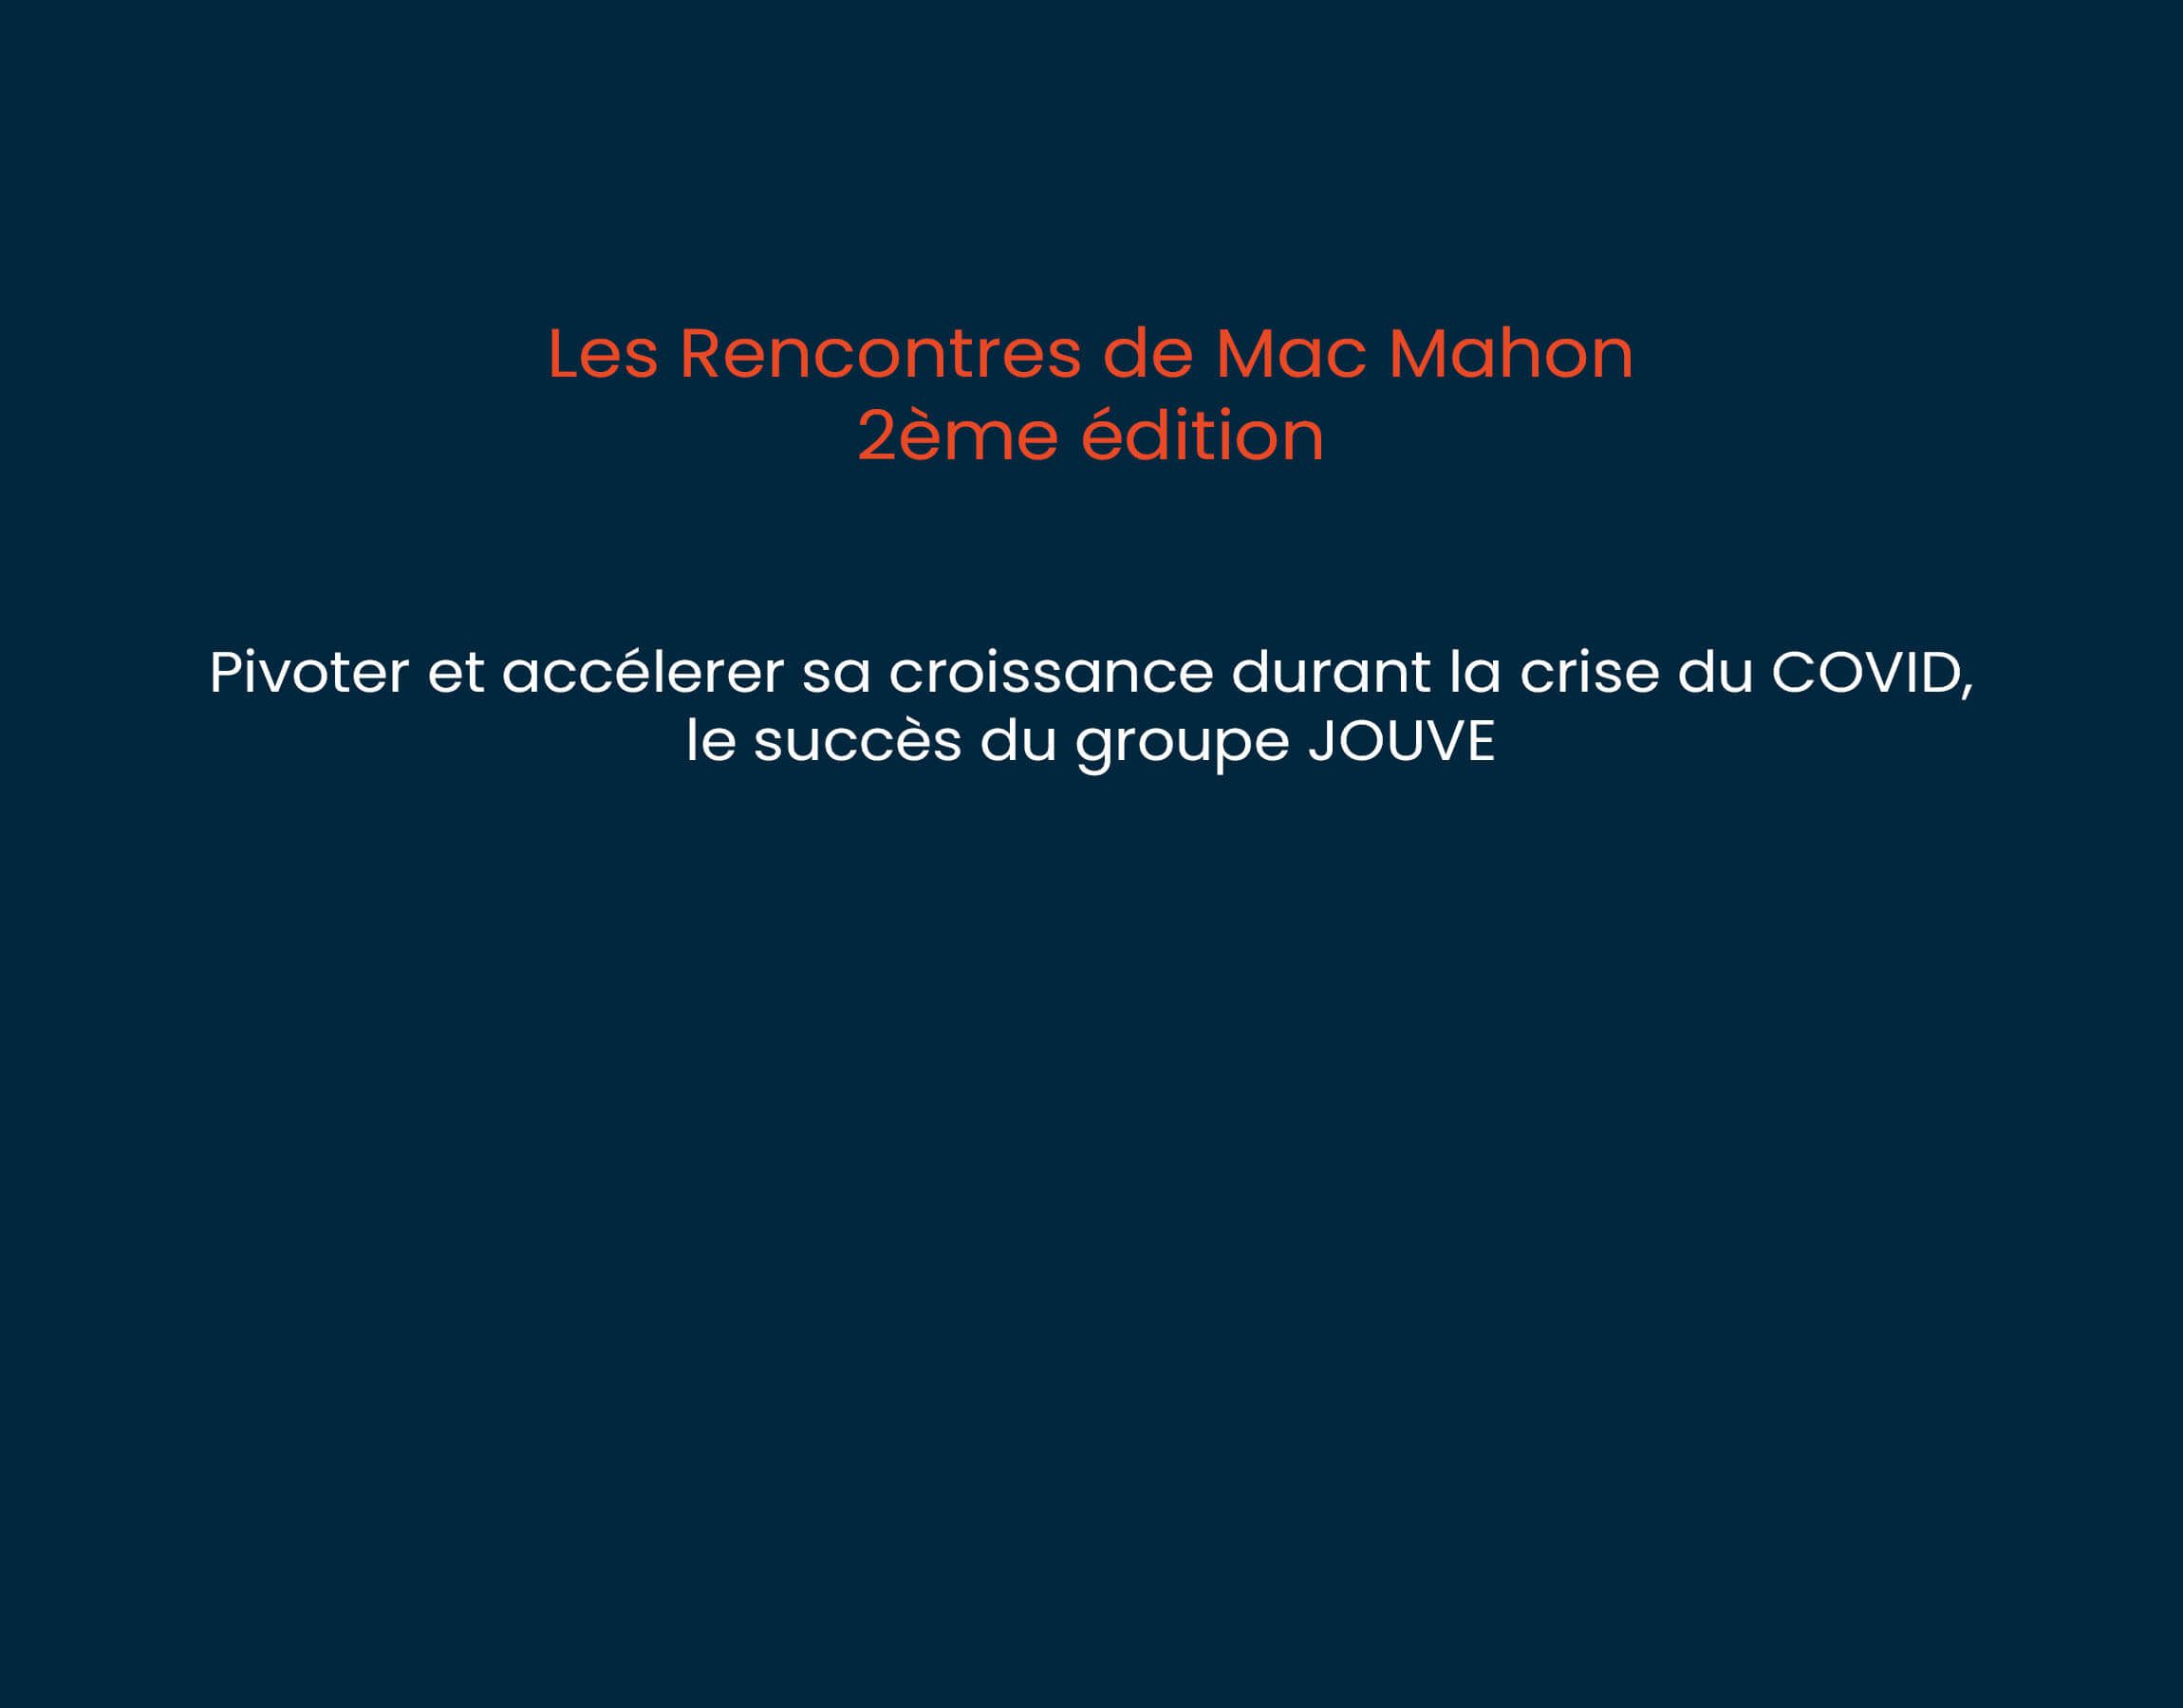 2ème édition “Les Rencontres de Mac Mahon”